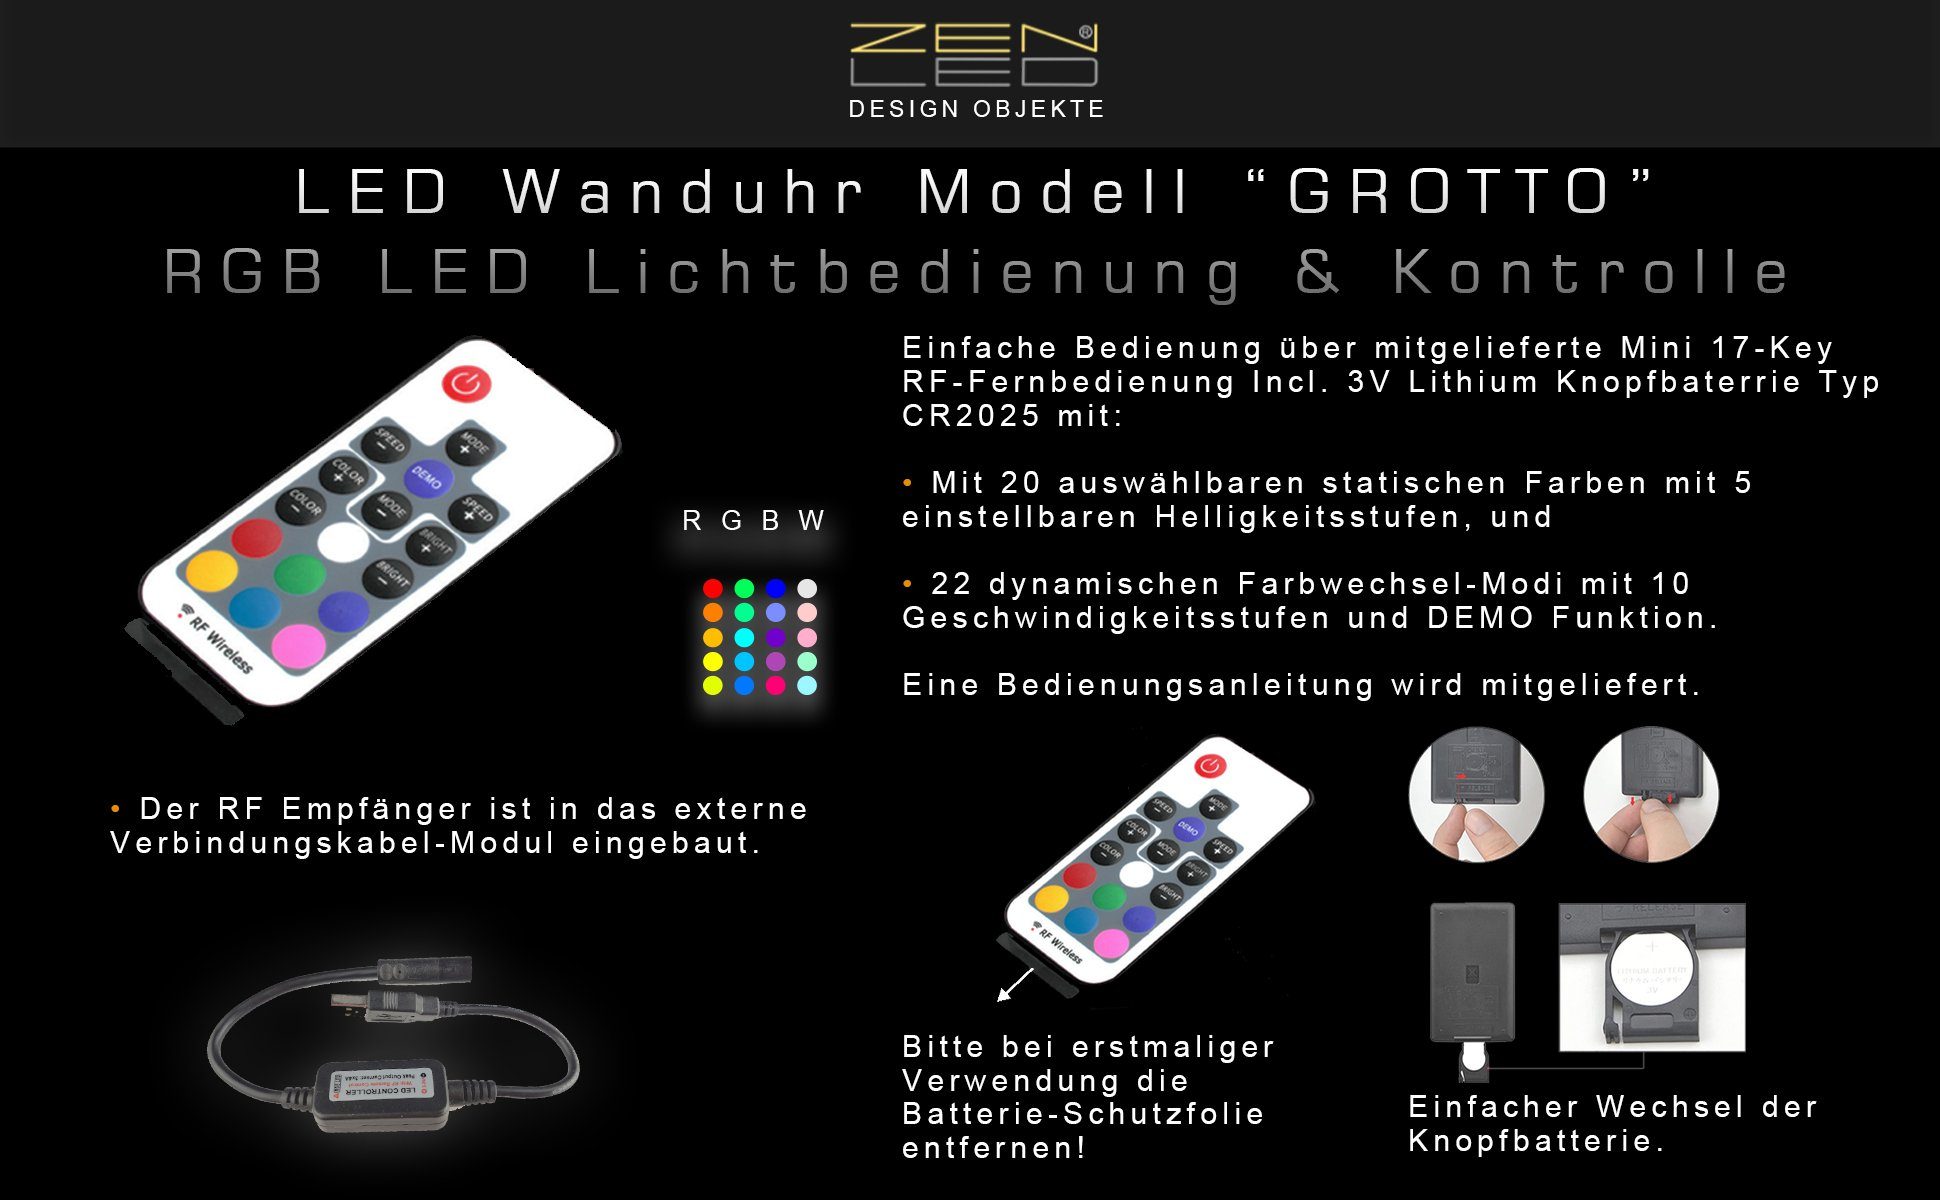 ZENLED Wanduhr Arabischen ALU 40cm RGB Holz ECKIG (ausgeleuchtet Designer über Fernbedienung) Lichtobjekt Ziffern Schwarz mit 3D-Effekt mehrfarbig in mit steuerbaren GROTTO Alu LEDs luxus - mit